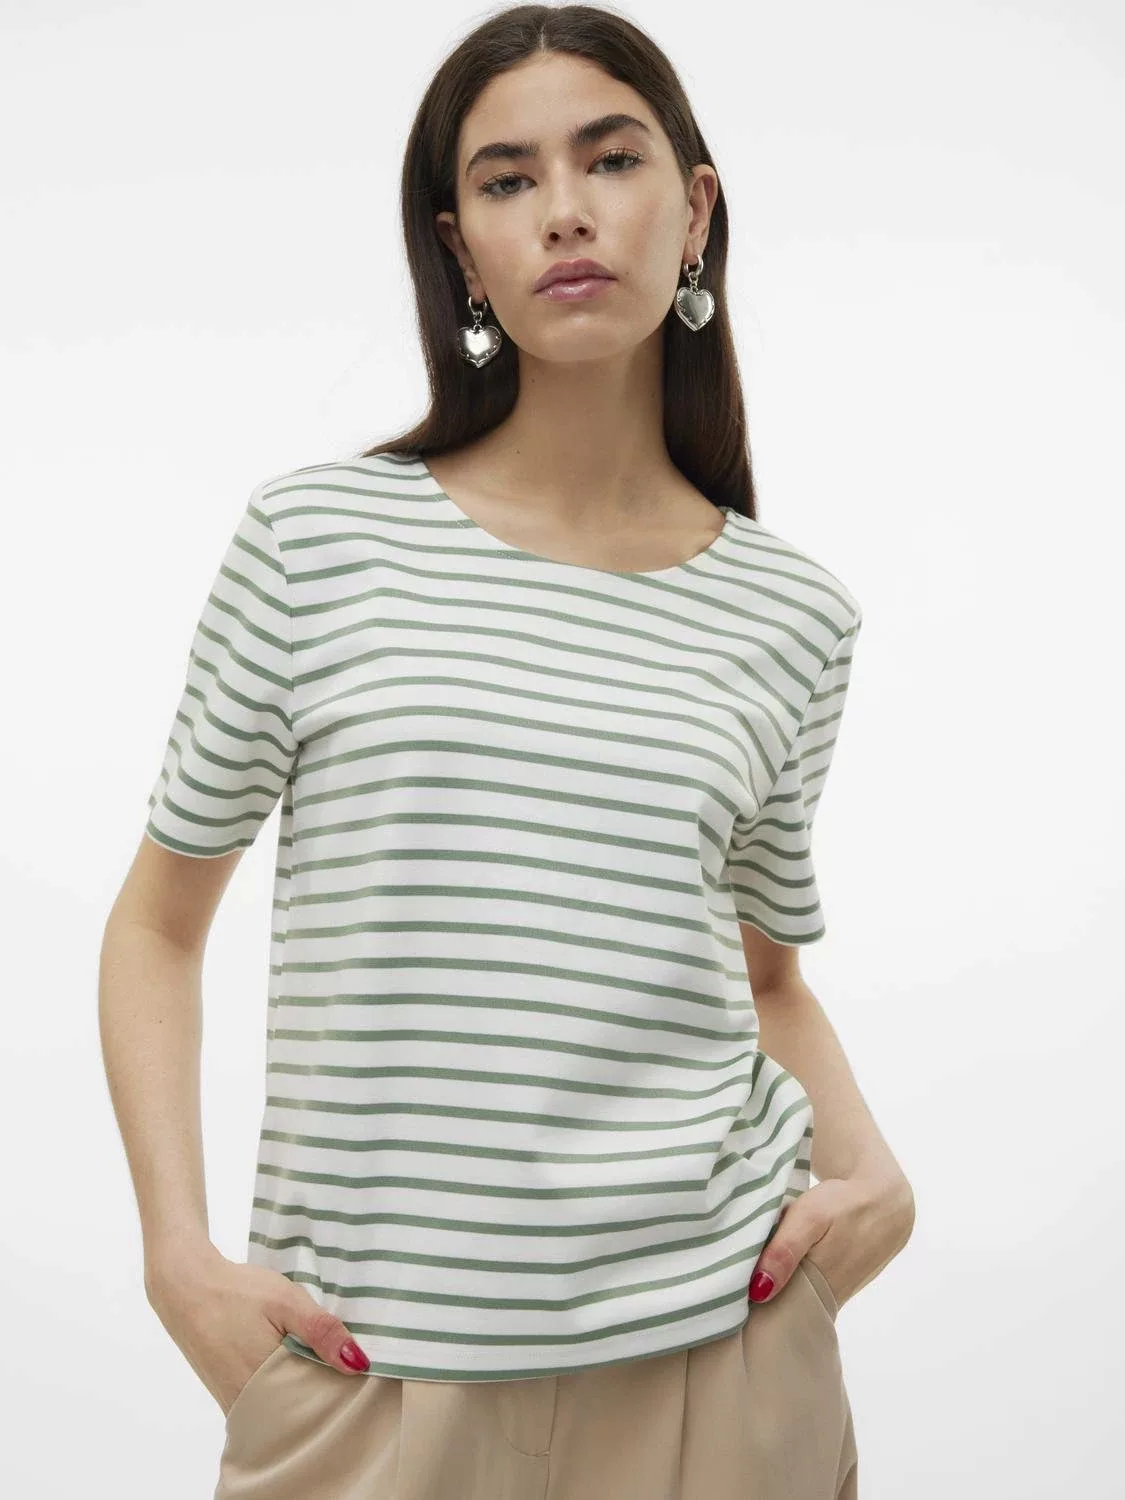 Vero Moda T-Shirt Rundhals Blusen Shirt mit Zip-Fly Design Halb Arm 7063 in günstig online kaufen